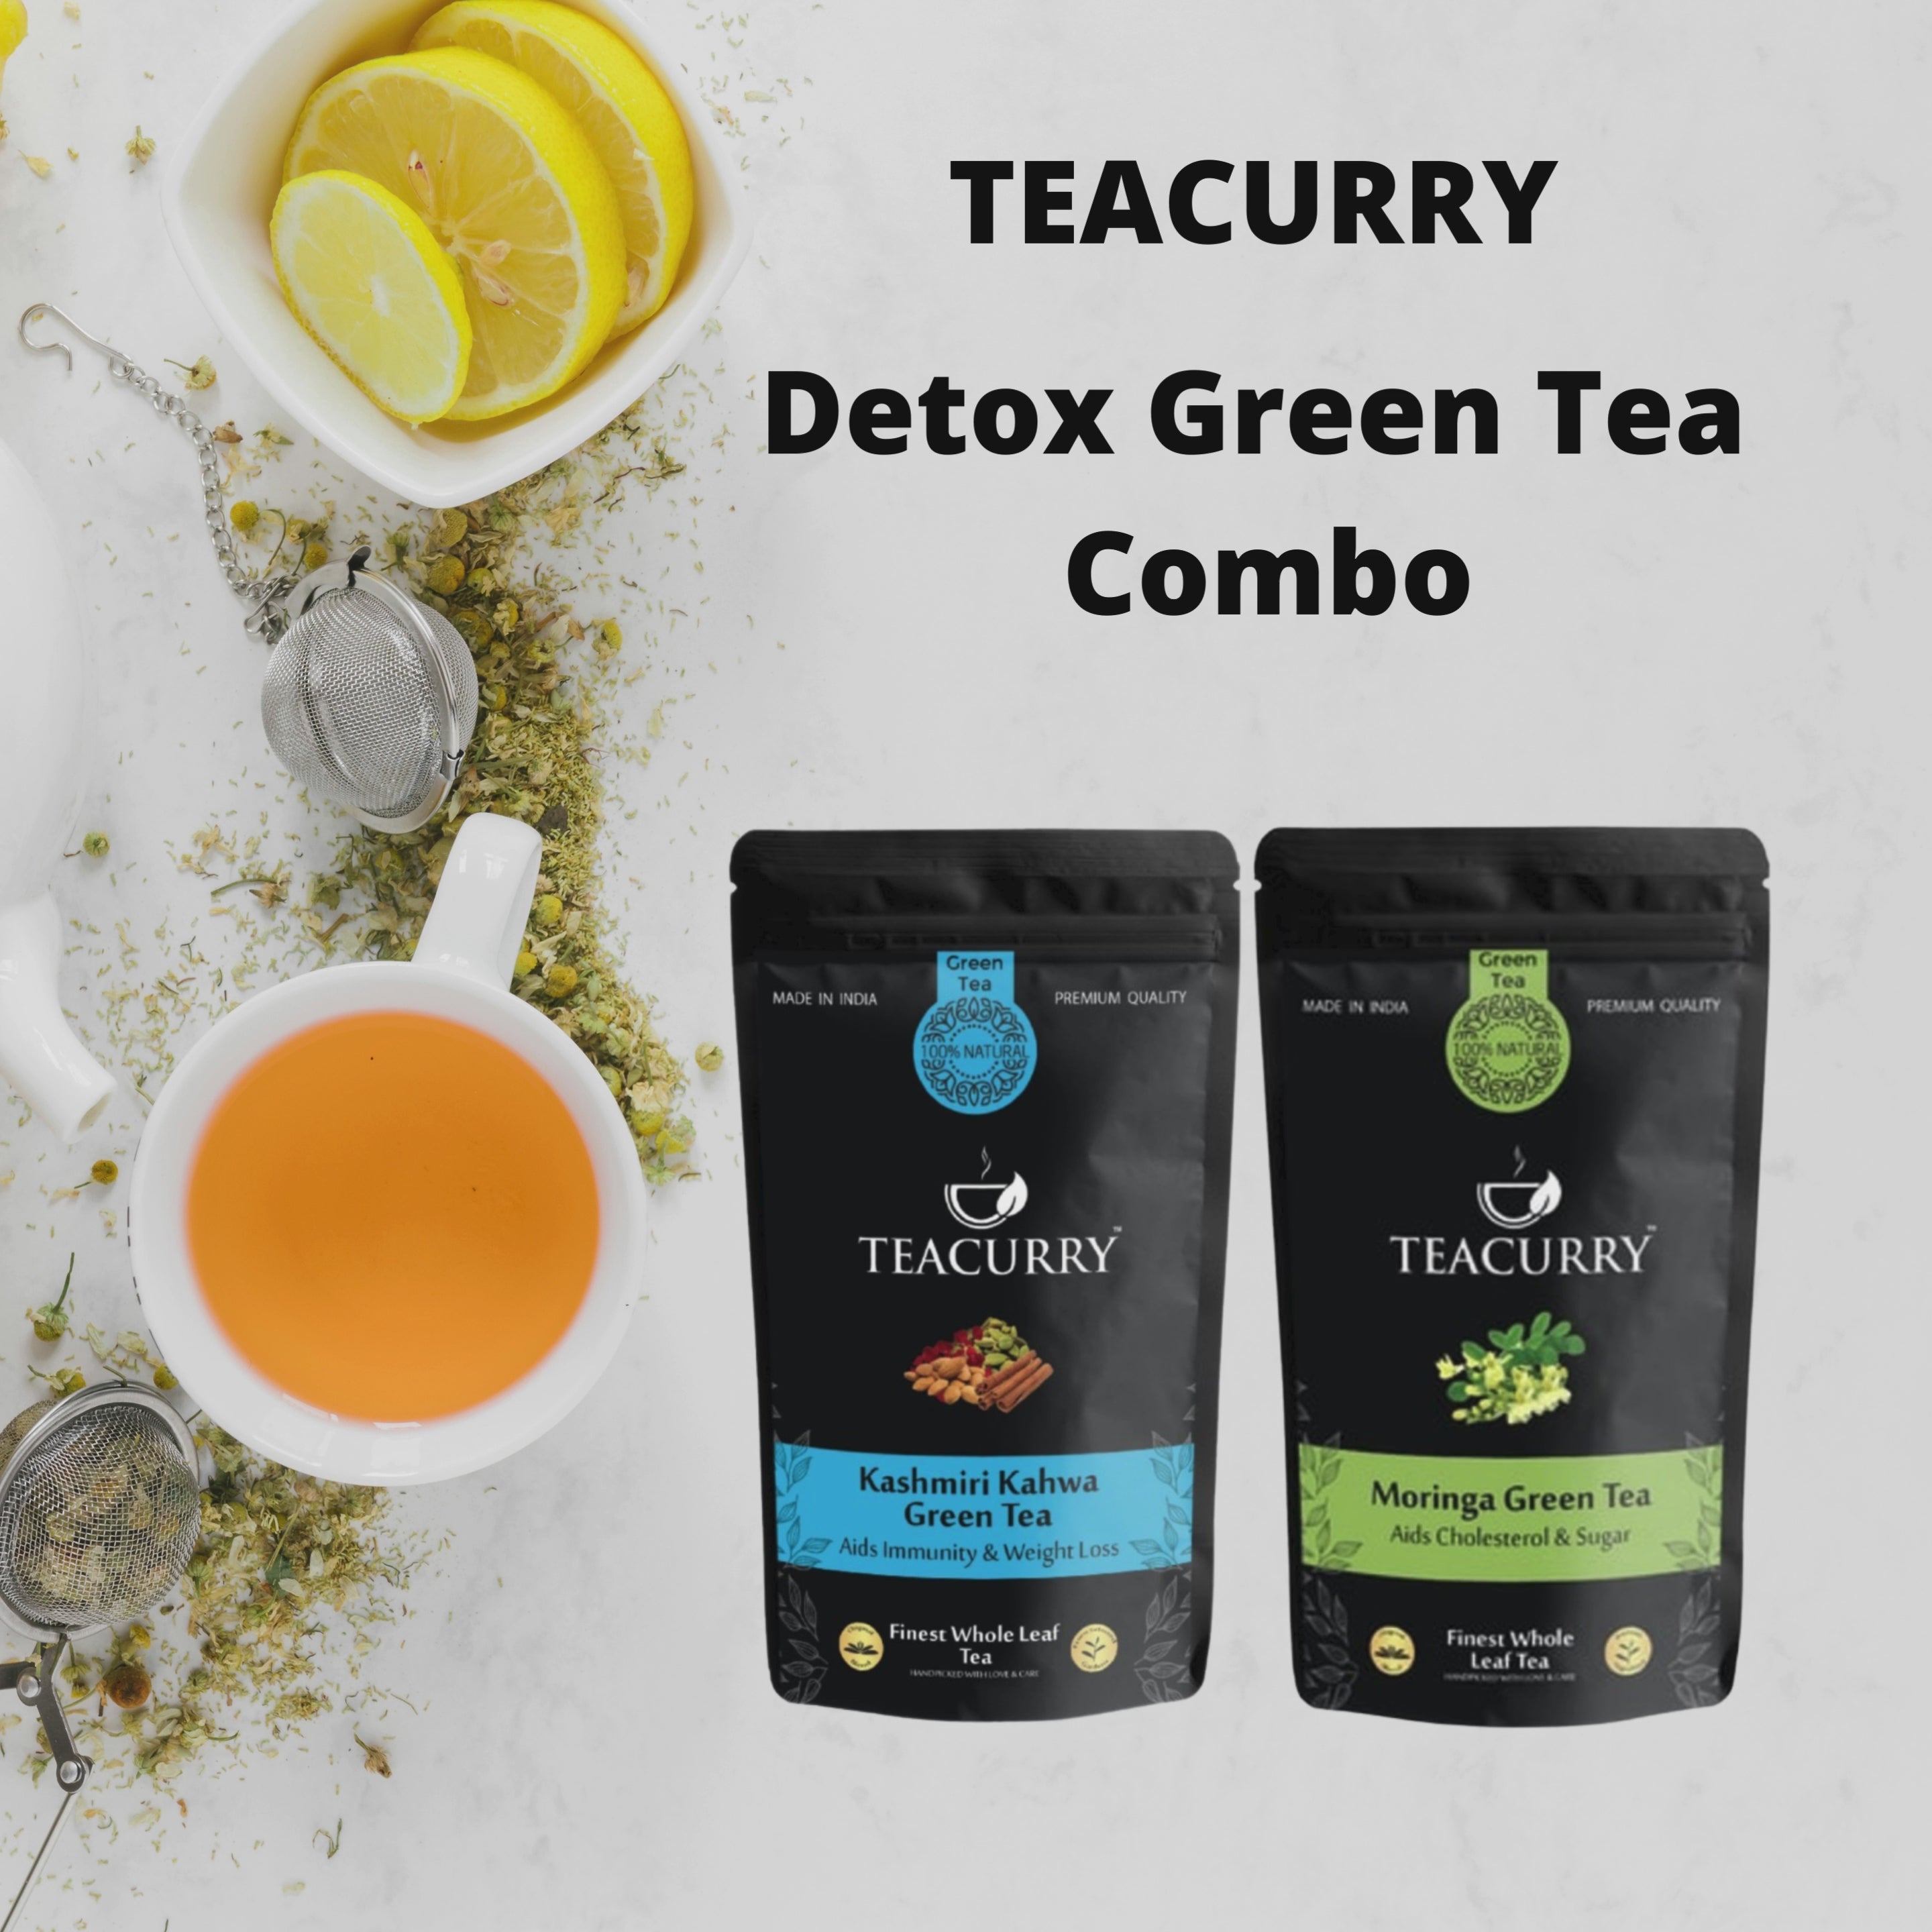 TEACURRY Detox Green Tea Combo Video